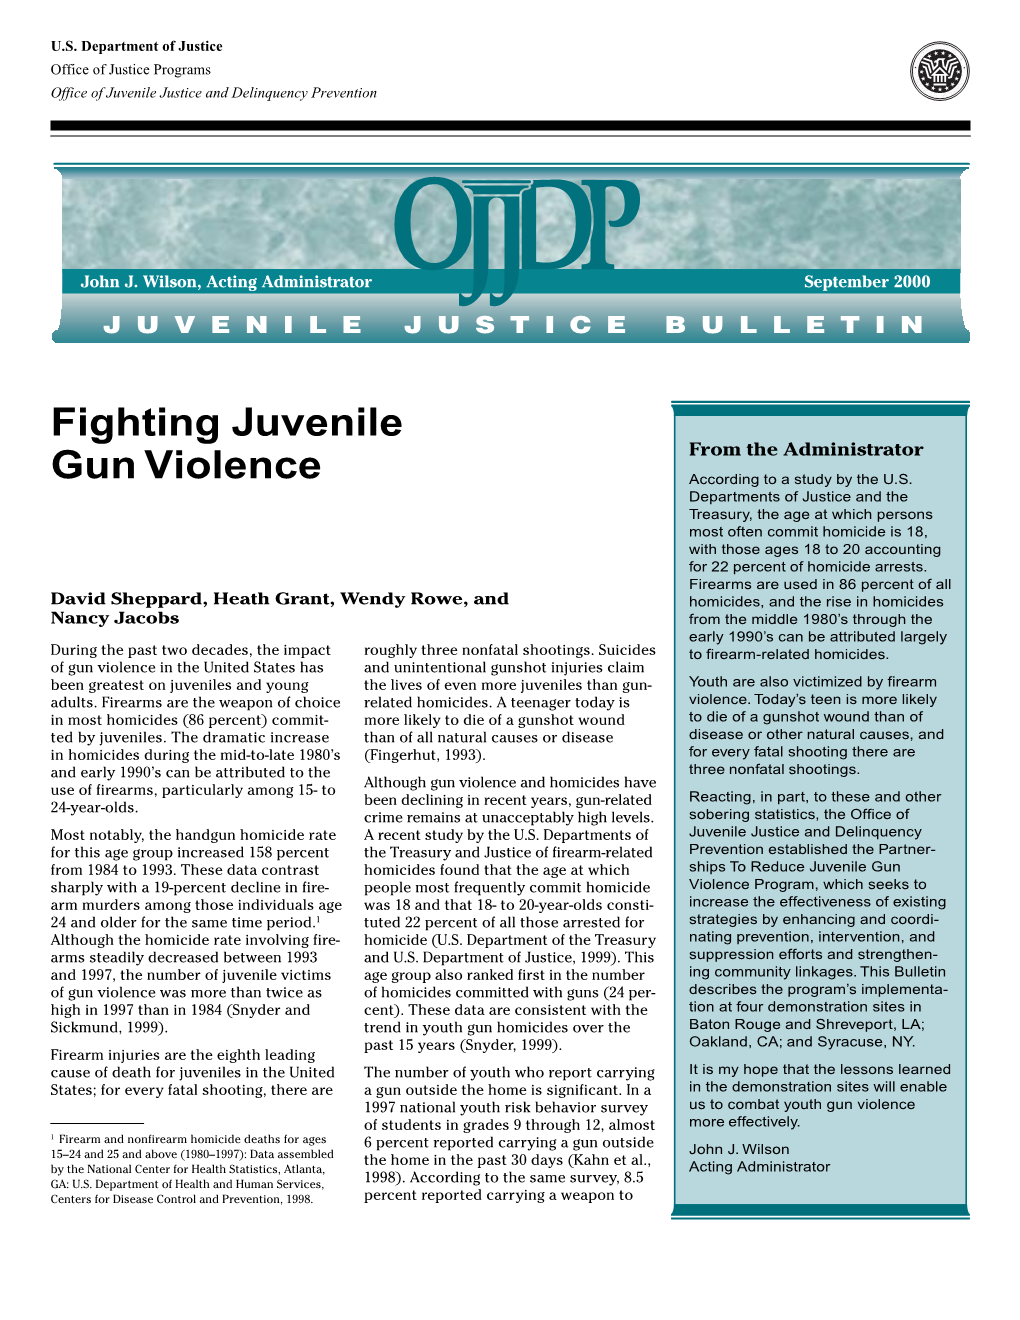 Fighting Juvenile Gun Violence